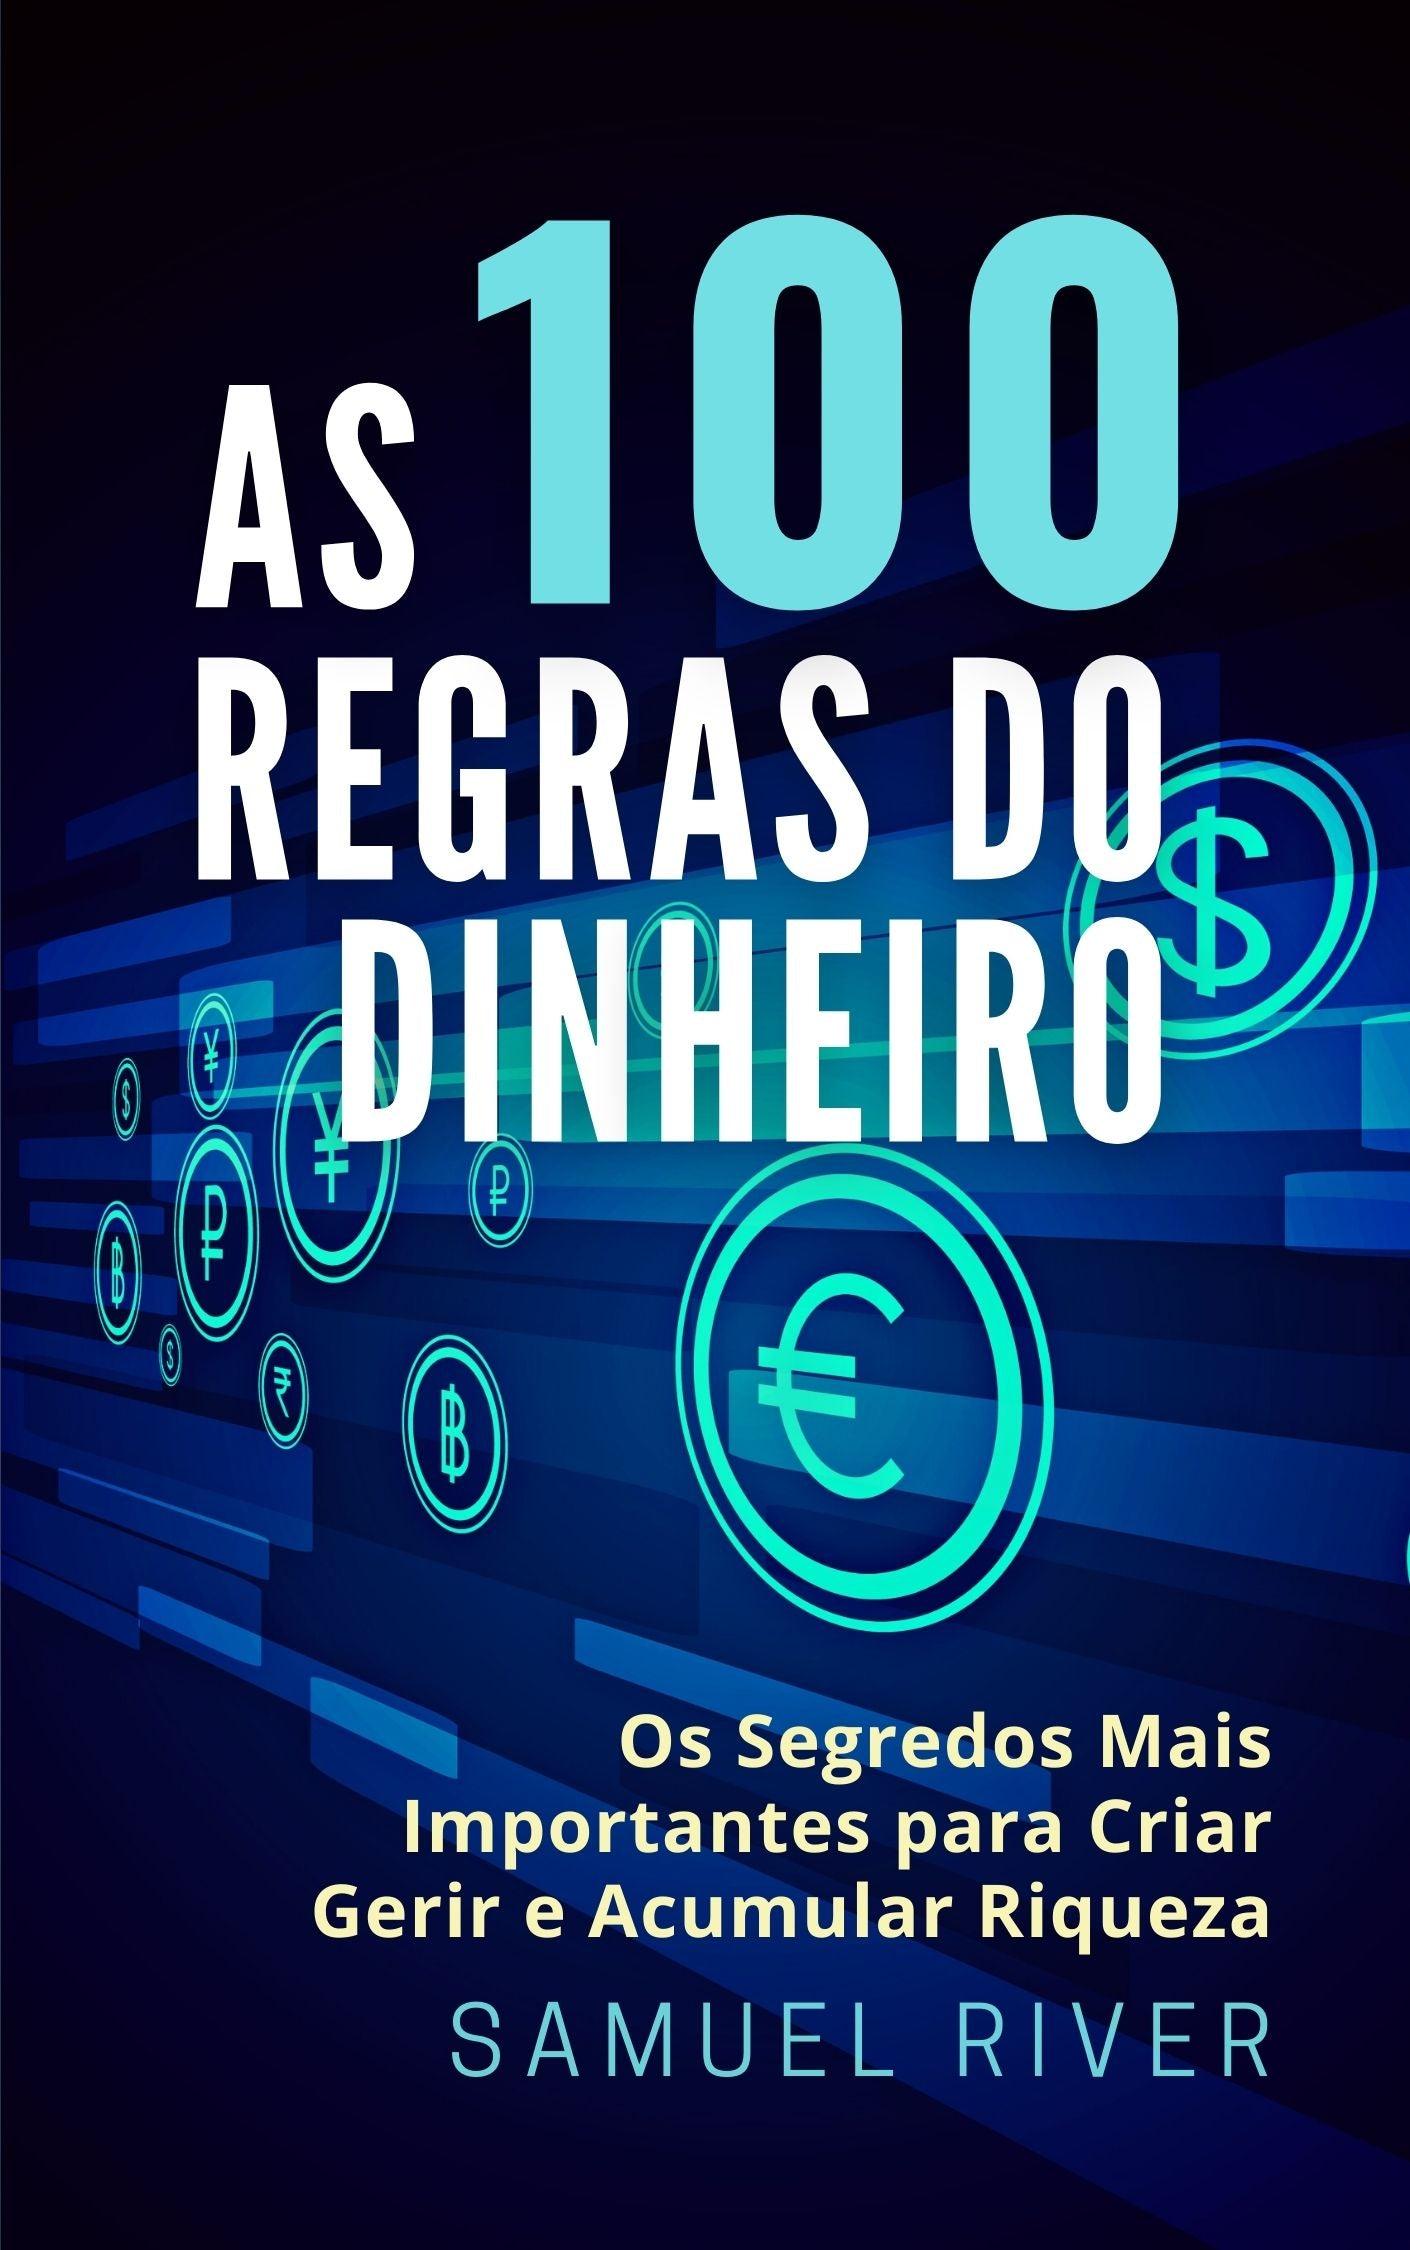 As 100 Regras do Dinheiro Portuguese